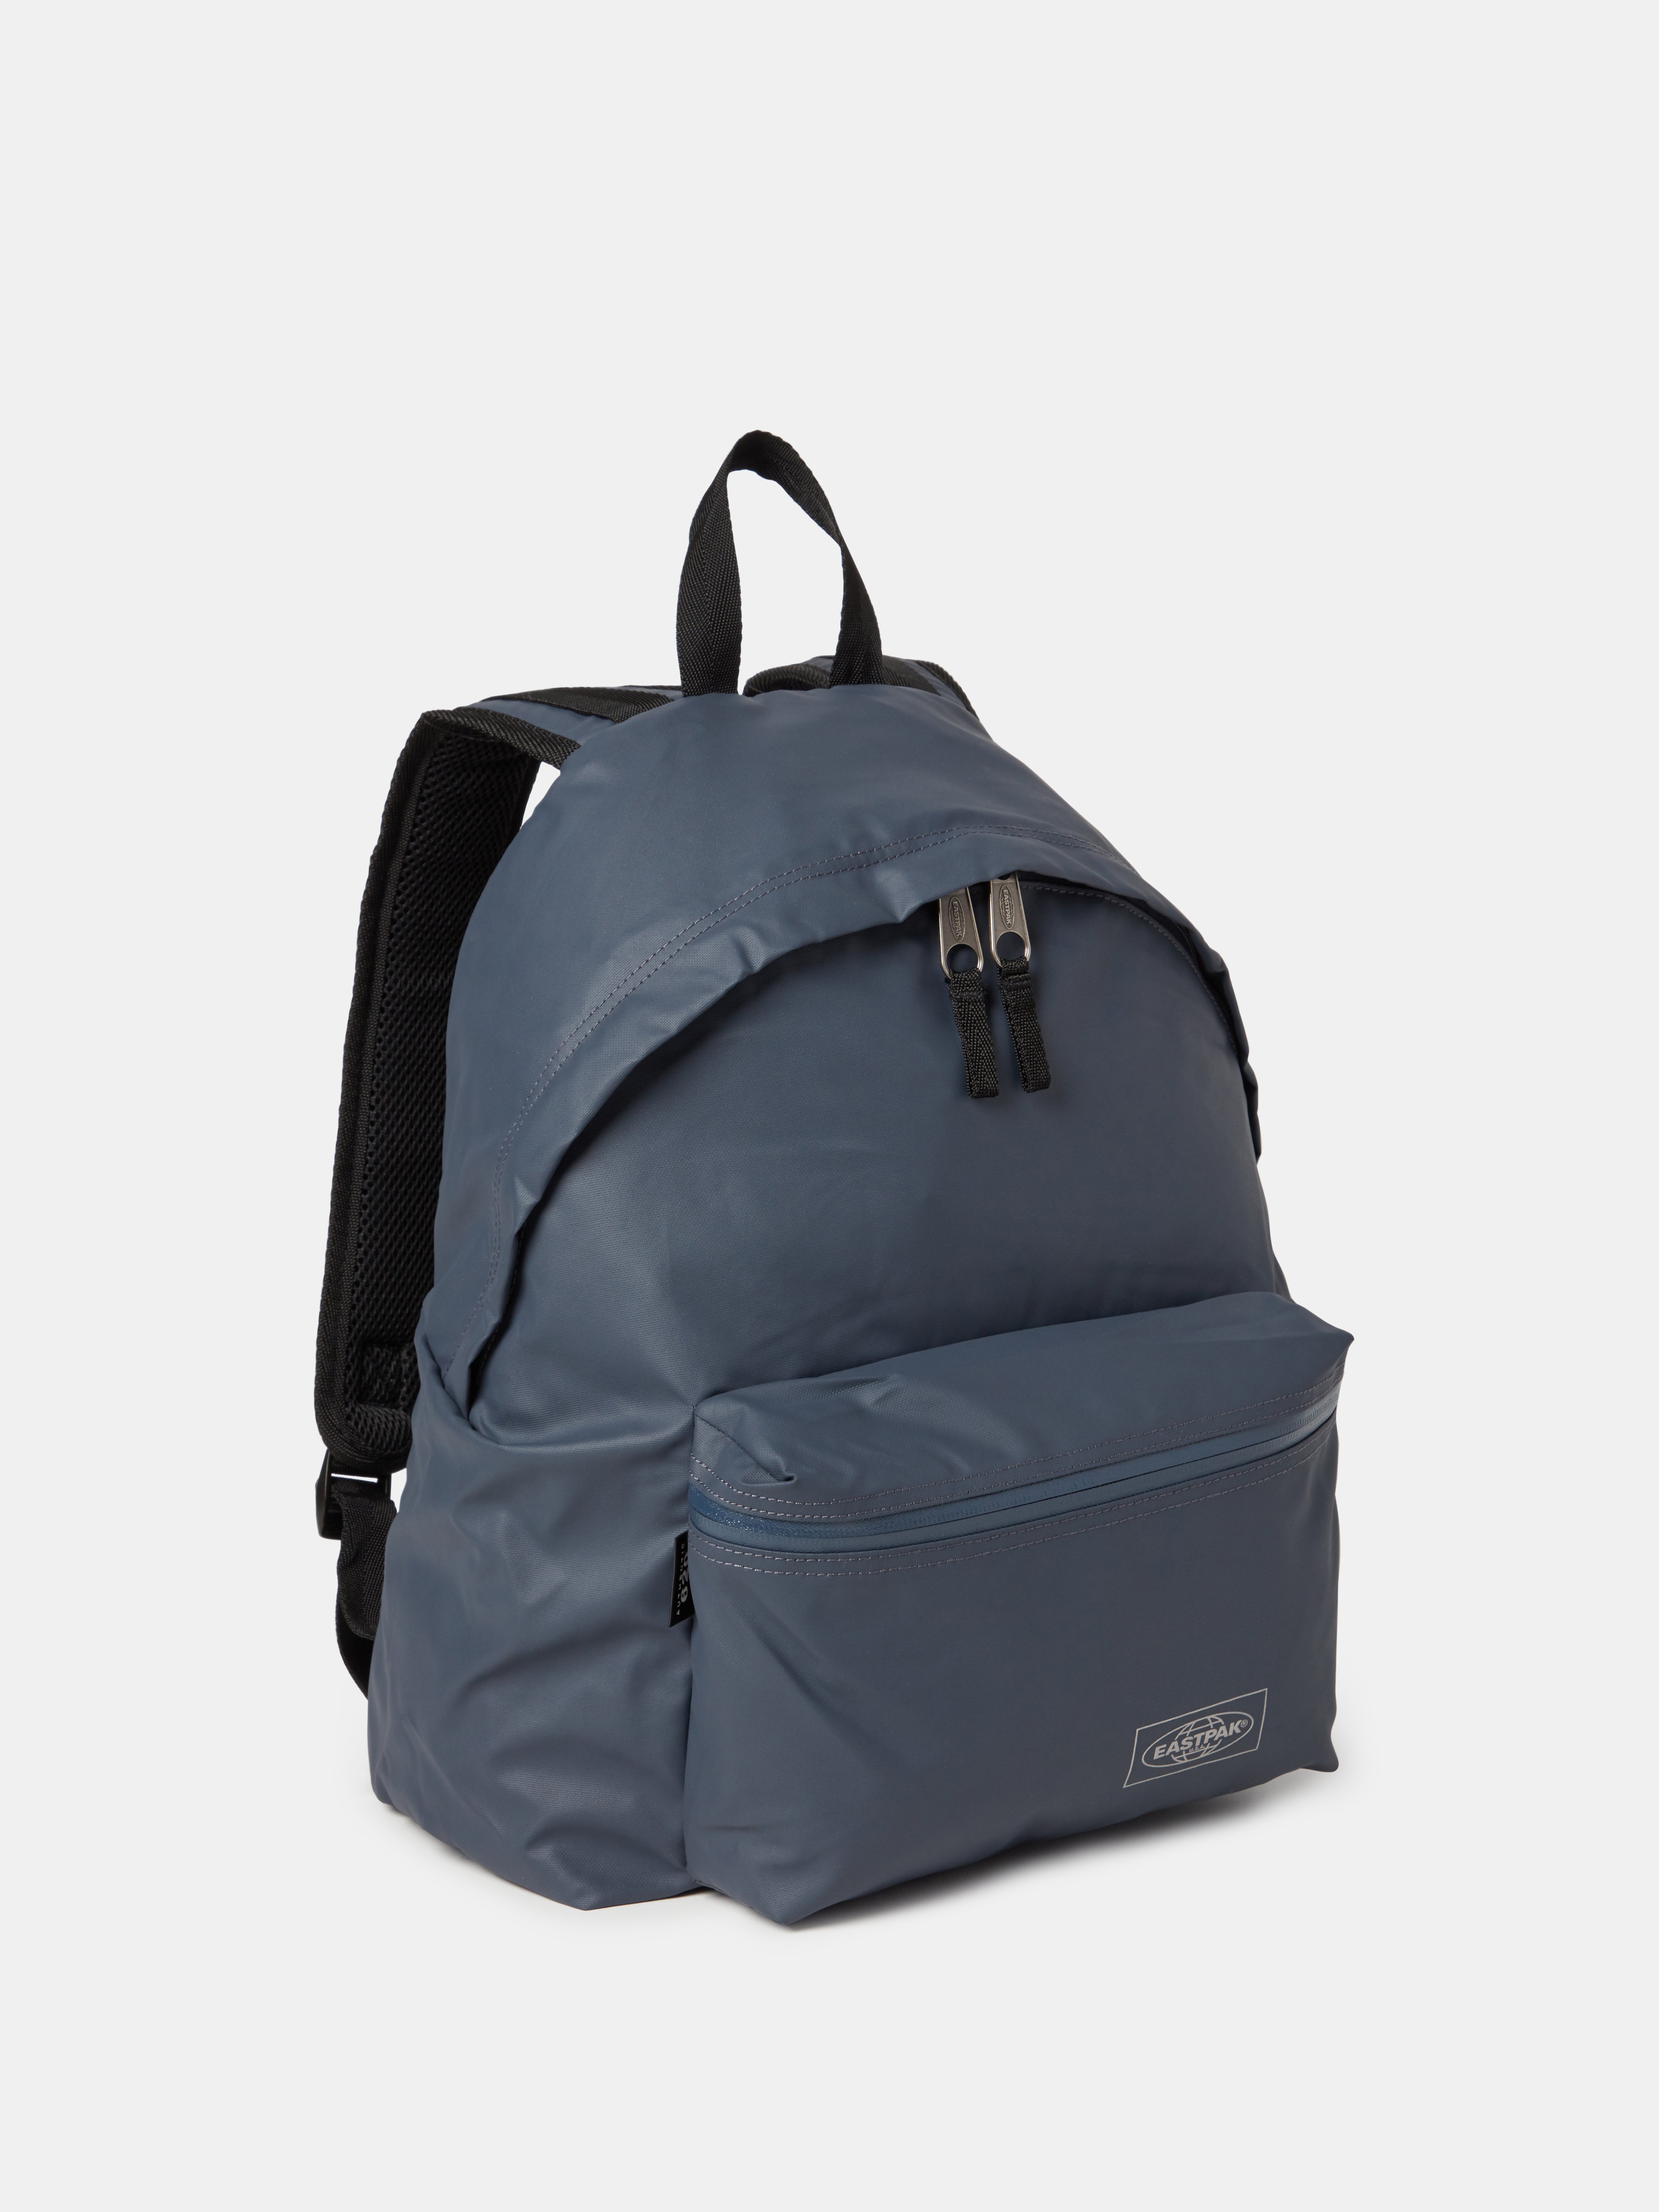 eastpak men's backpack